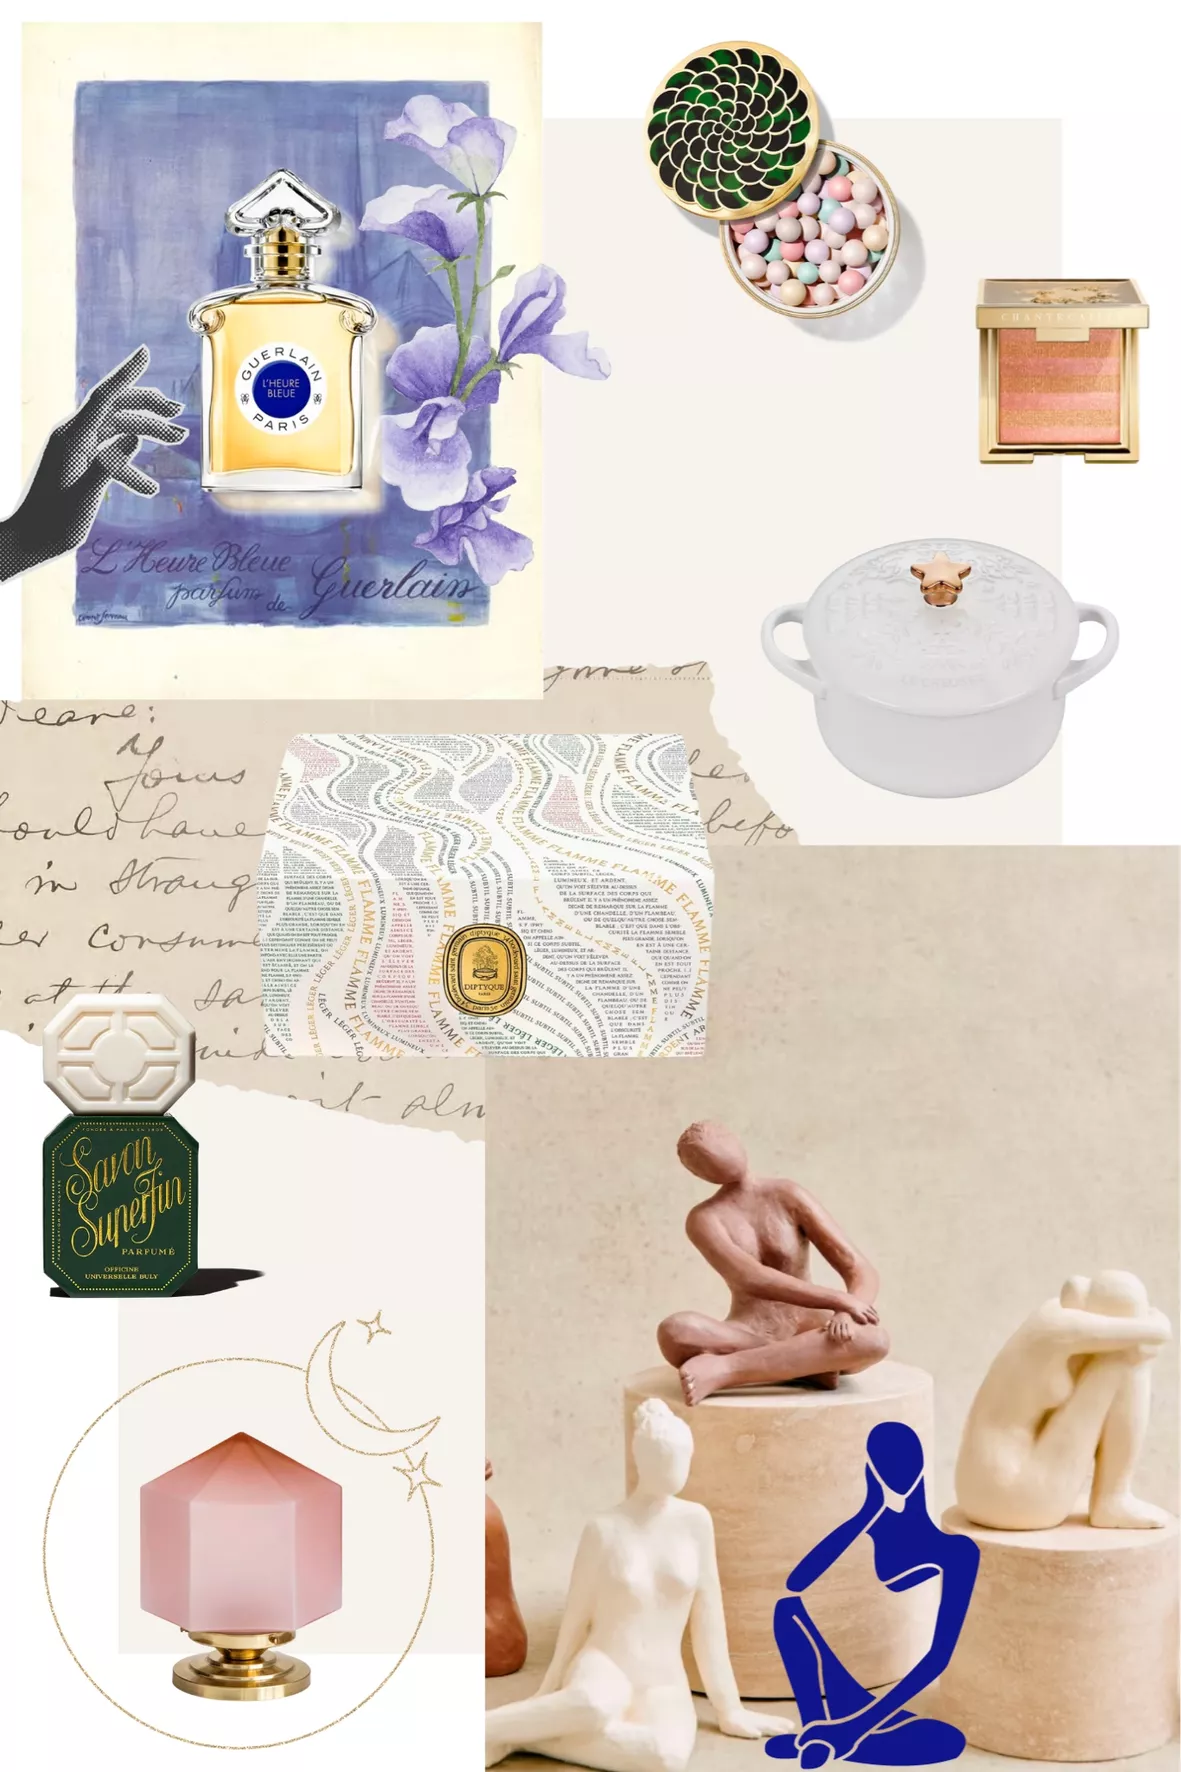 L'Heure Bleue Eau de Parfum (75ml) curated on LTK